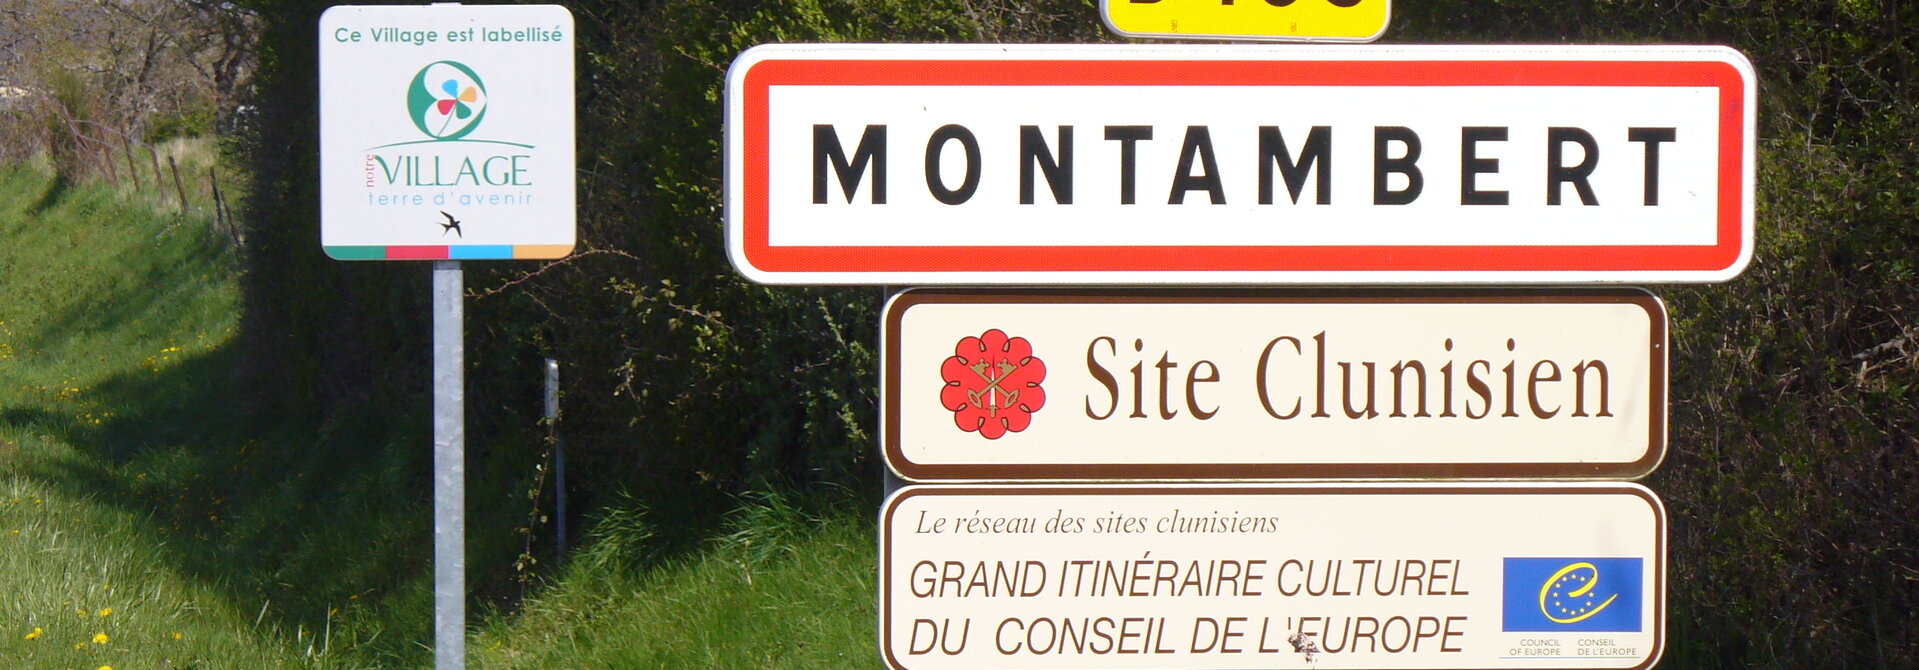 Mairie de Montambert dans le 58 Bourgogne Franche-Comté